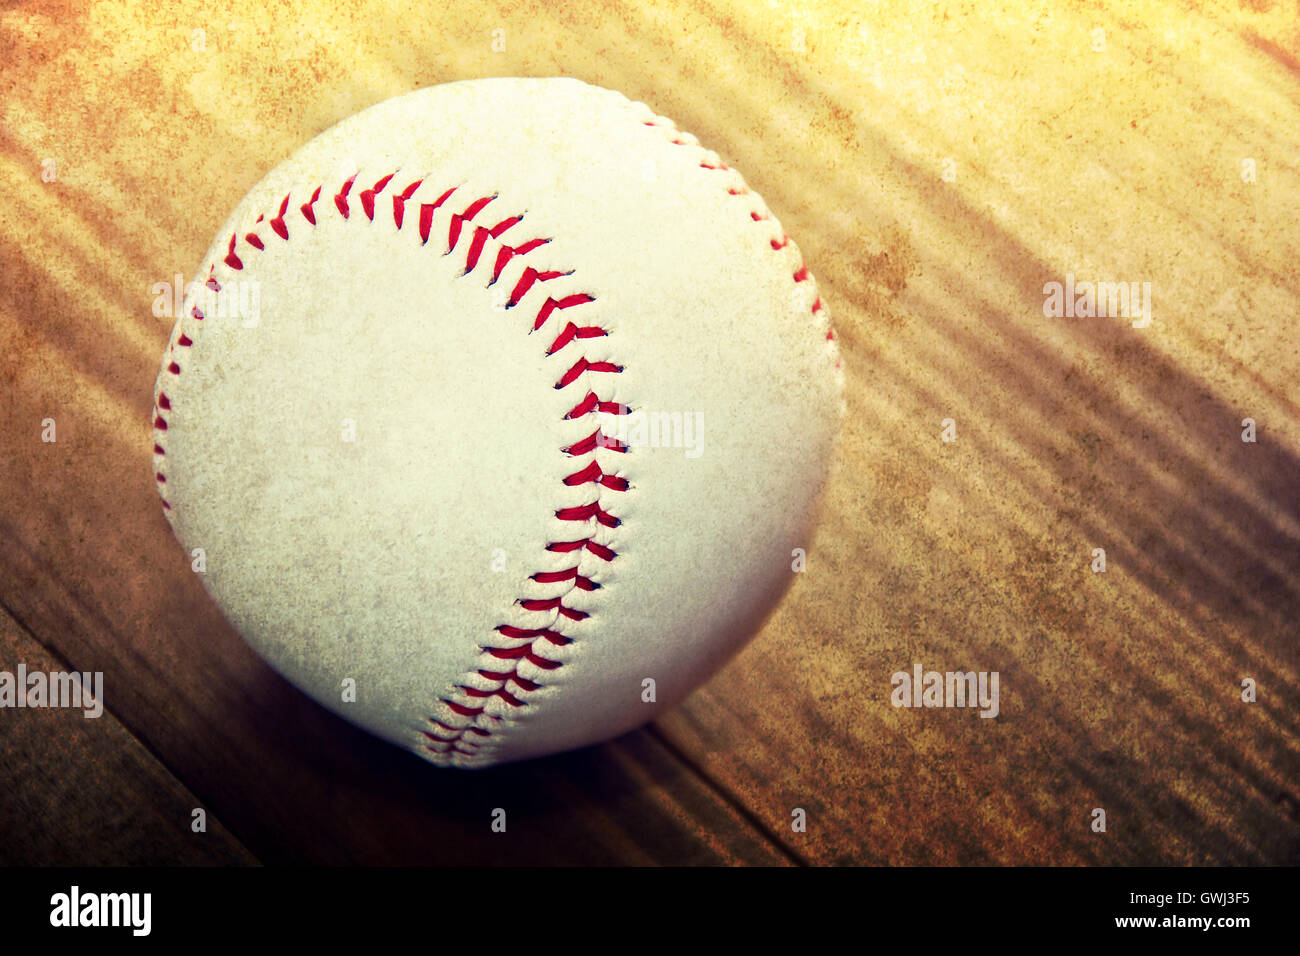 Juego de baseball. Bola de béisbol sobre fondo de madera. Grunge imagen. Foto de stock